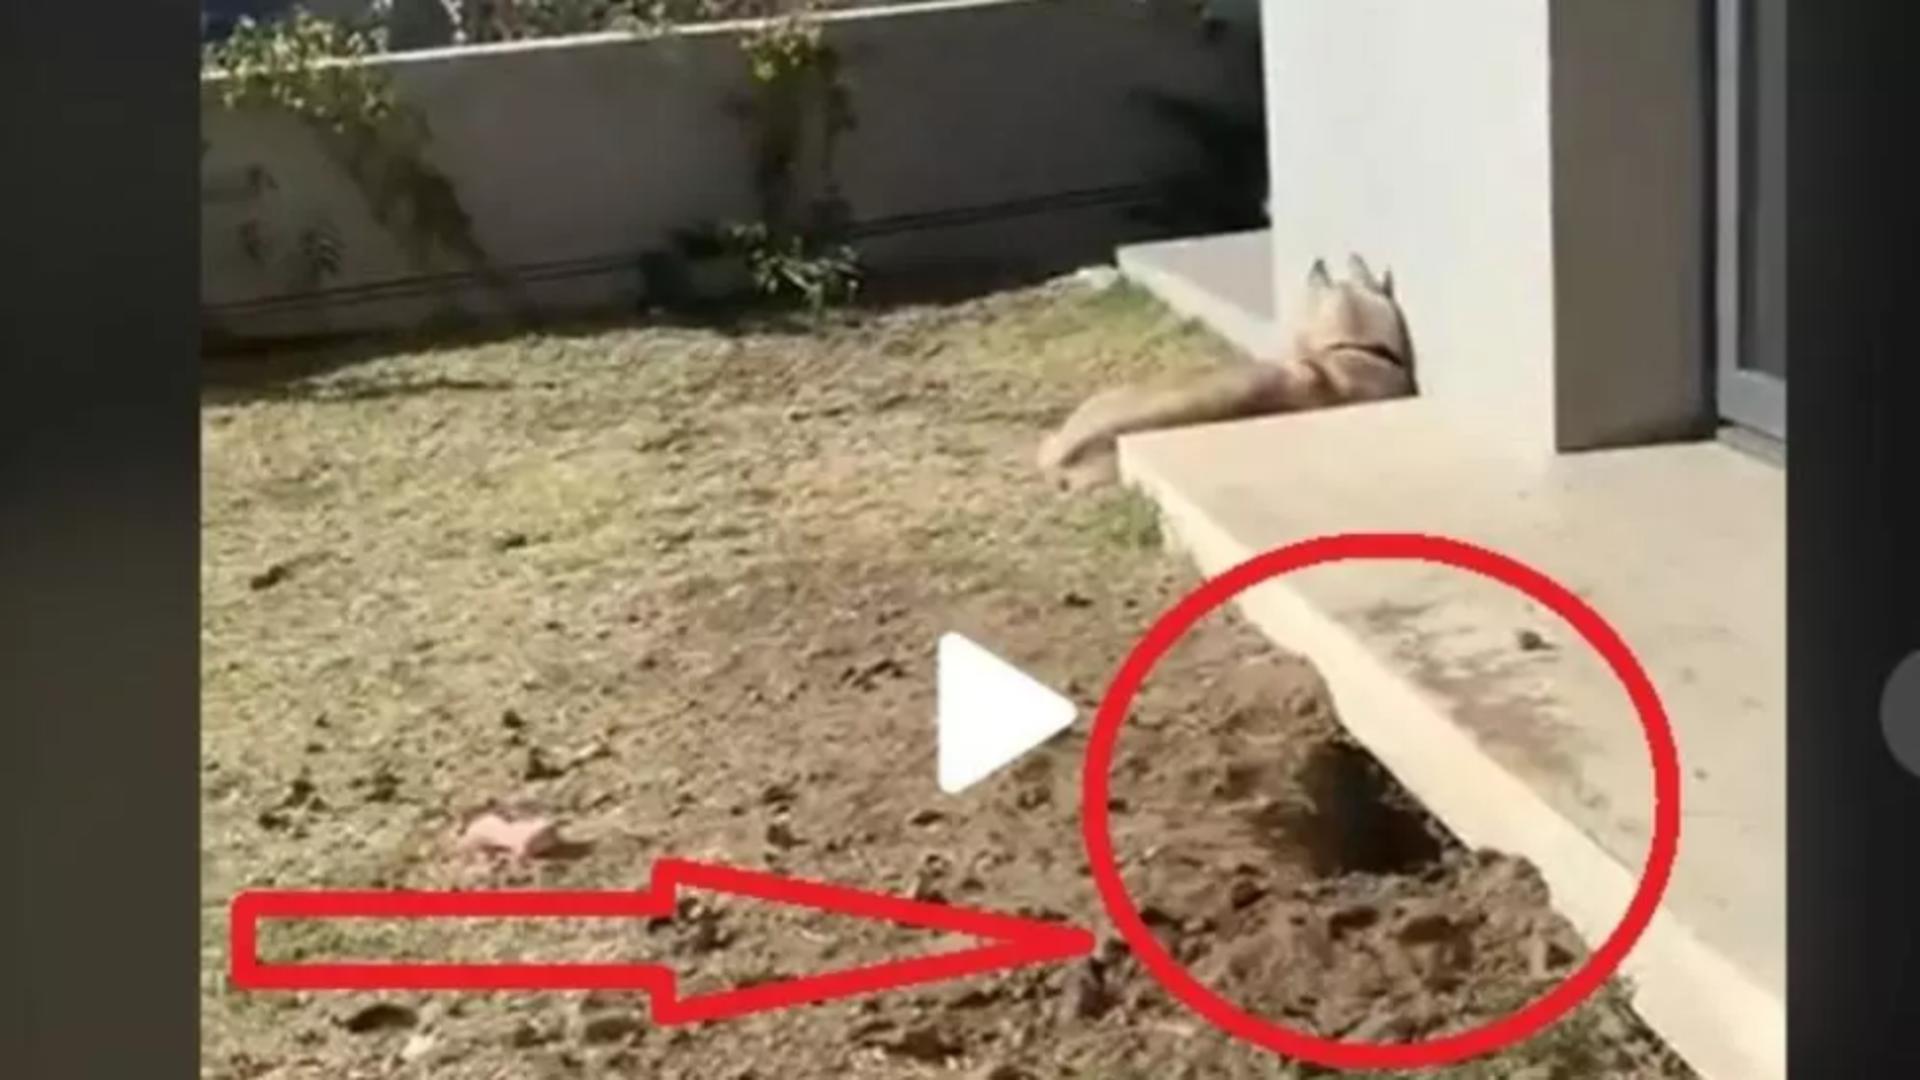 VIDEO – Proprietarul unei case a auzit zgomote buternice de sub locuința sa – A ieșit repede afară, a văzut o groapă și început să filmeze